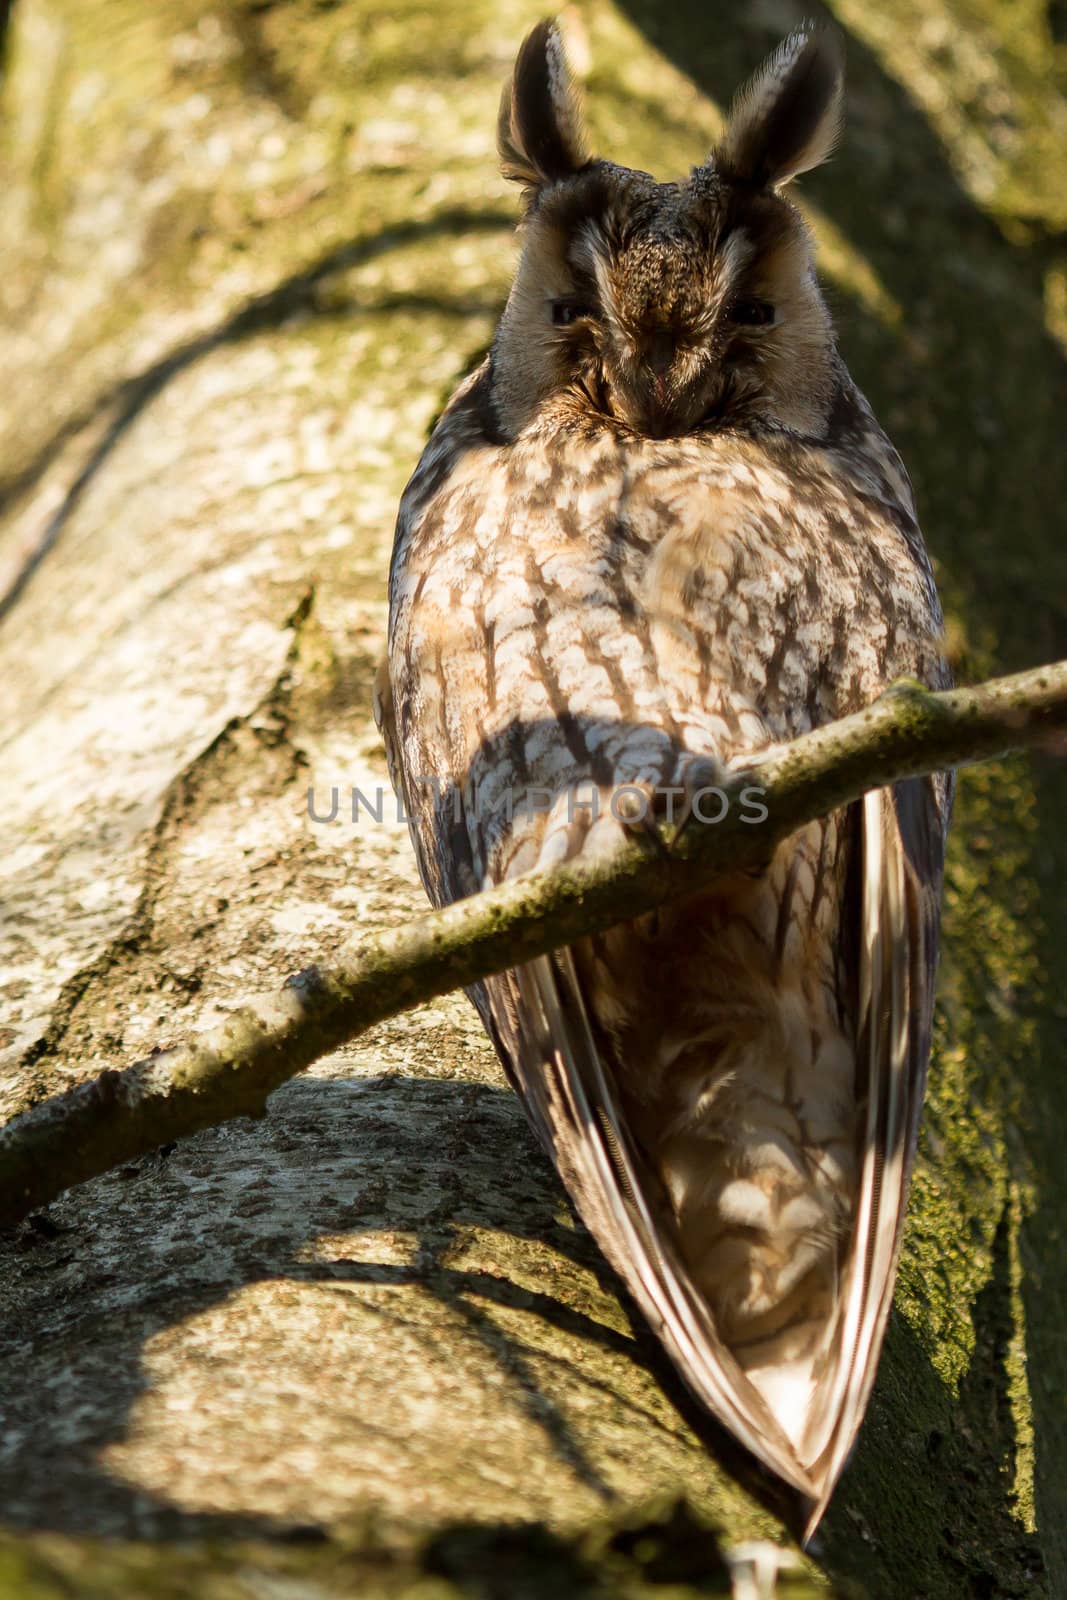 A sleeping long-eared owl by michaklootwijk